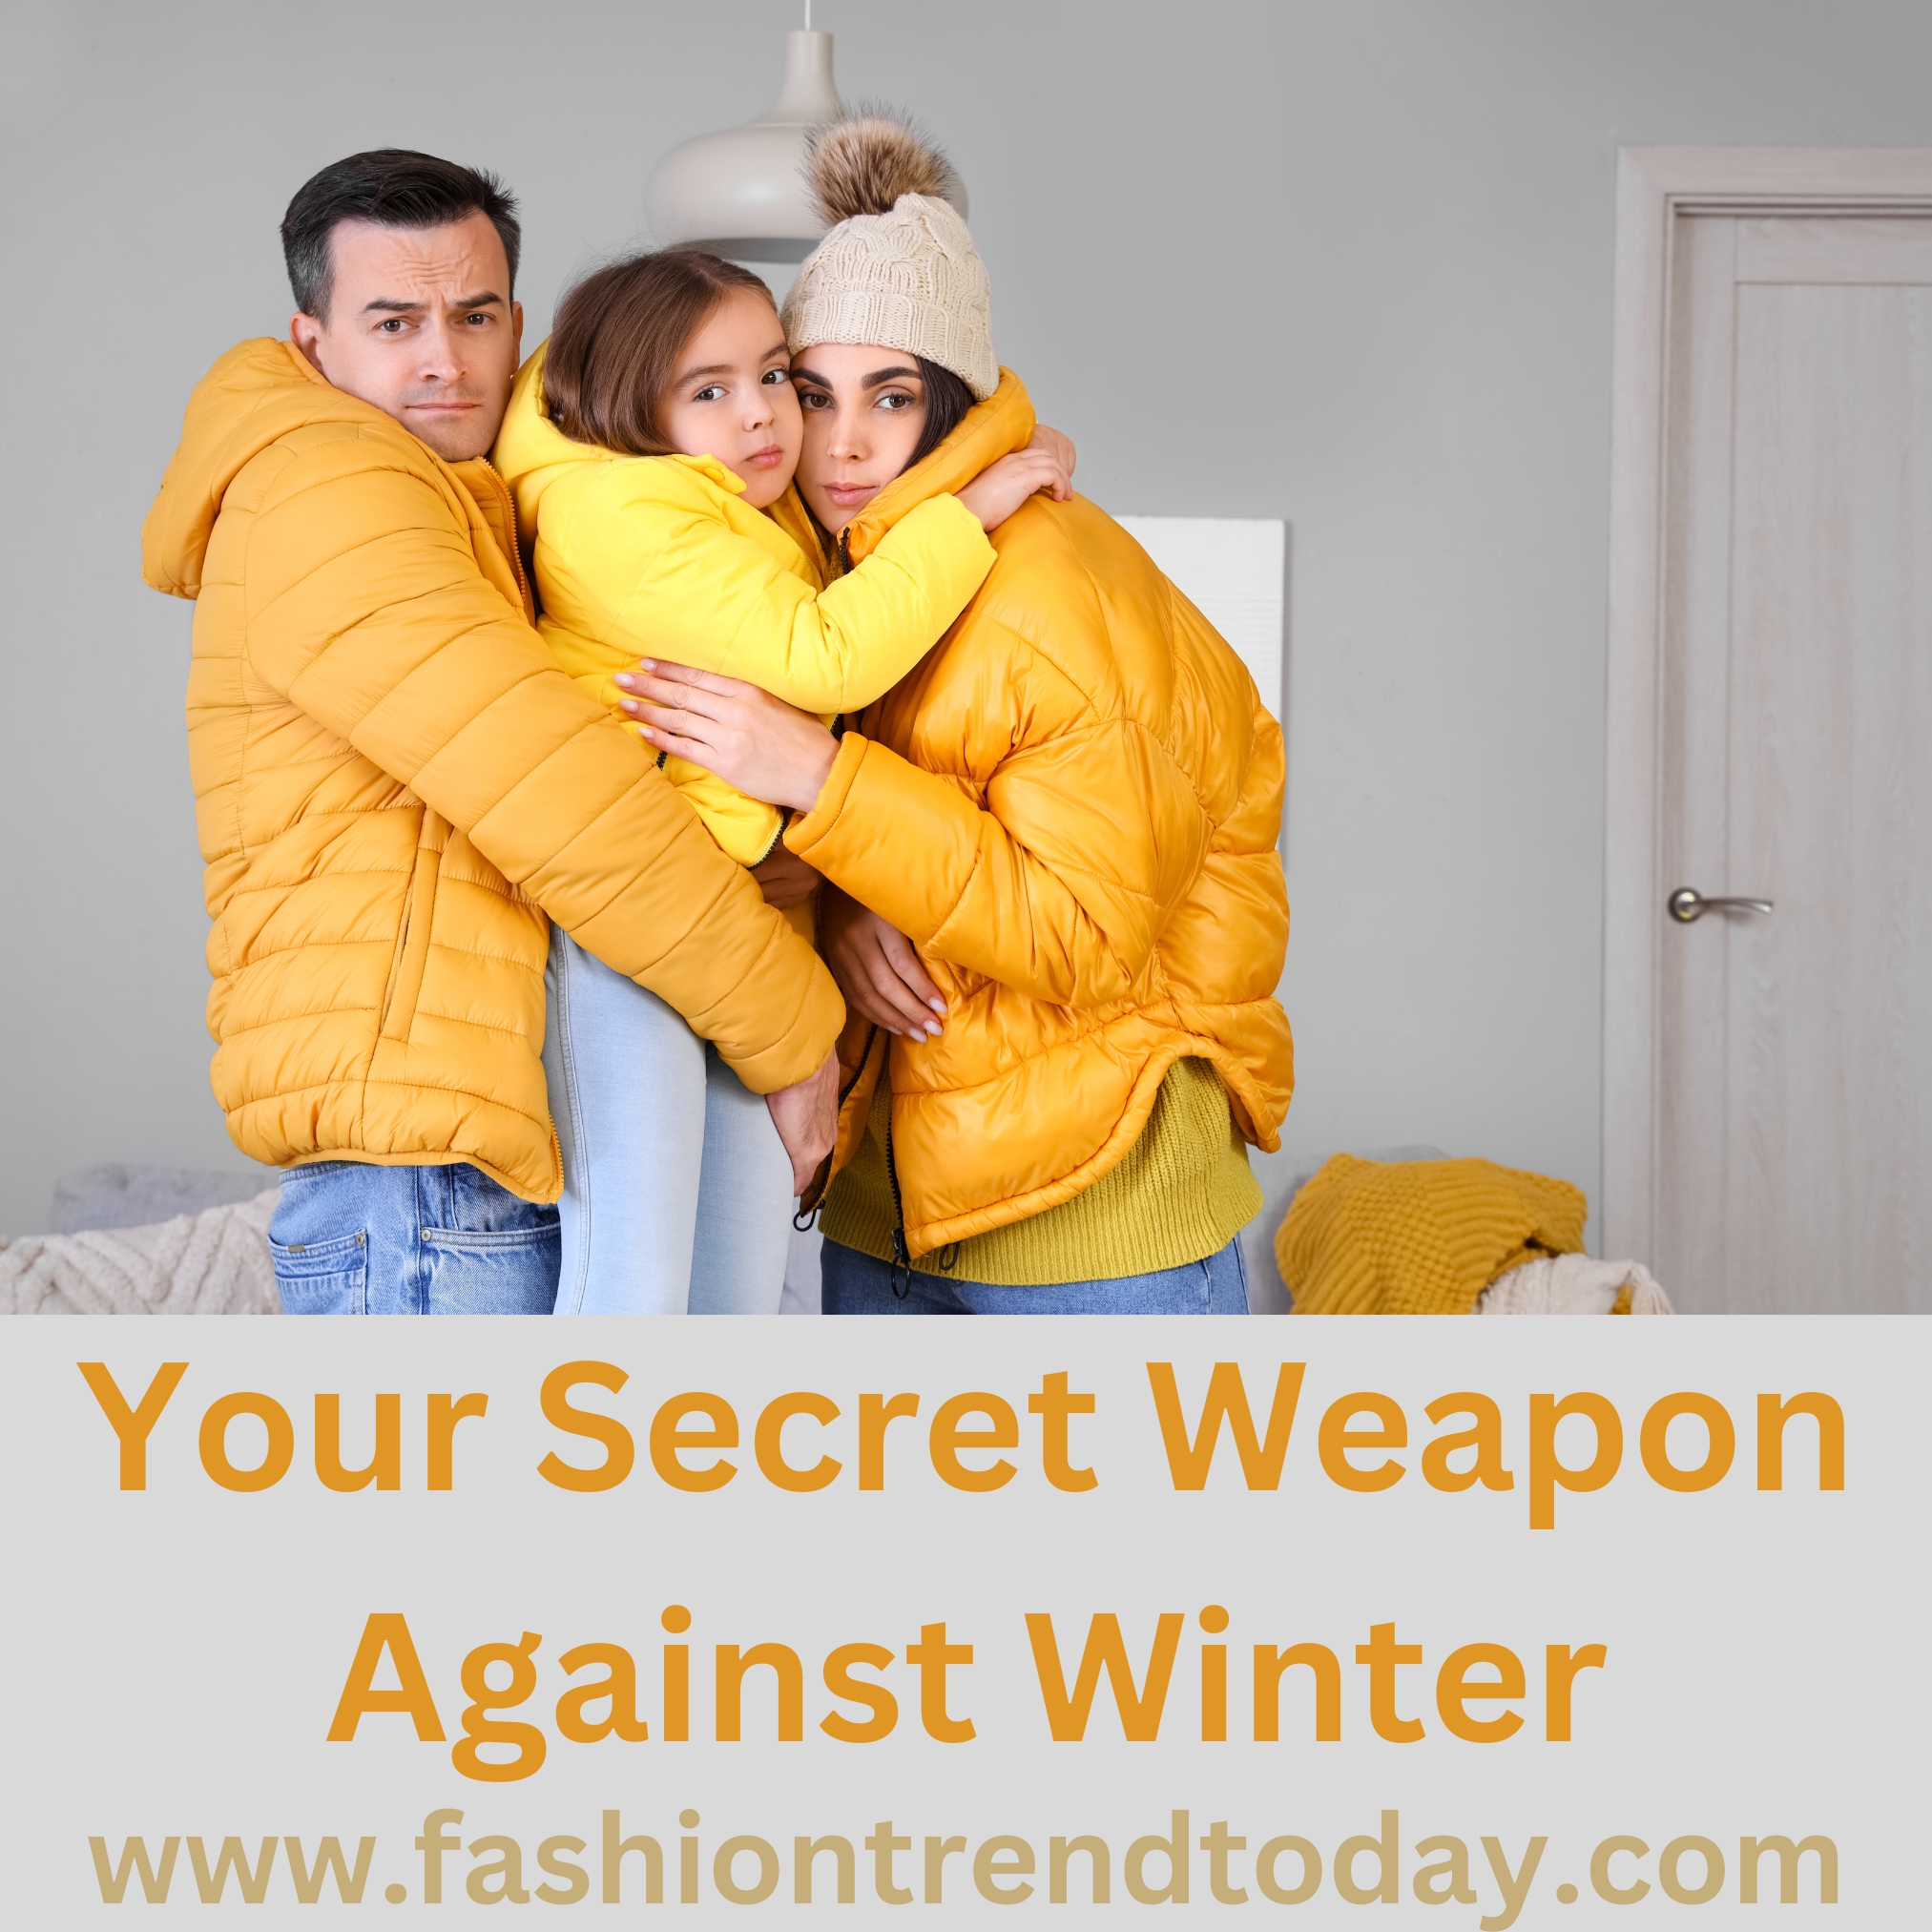 Your Secret Weapon Against Winter